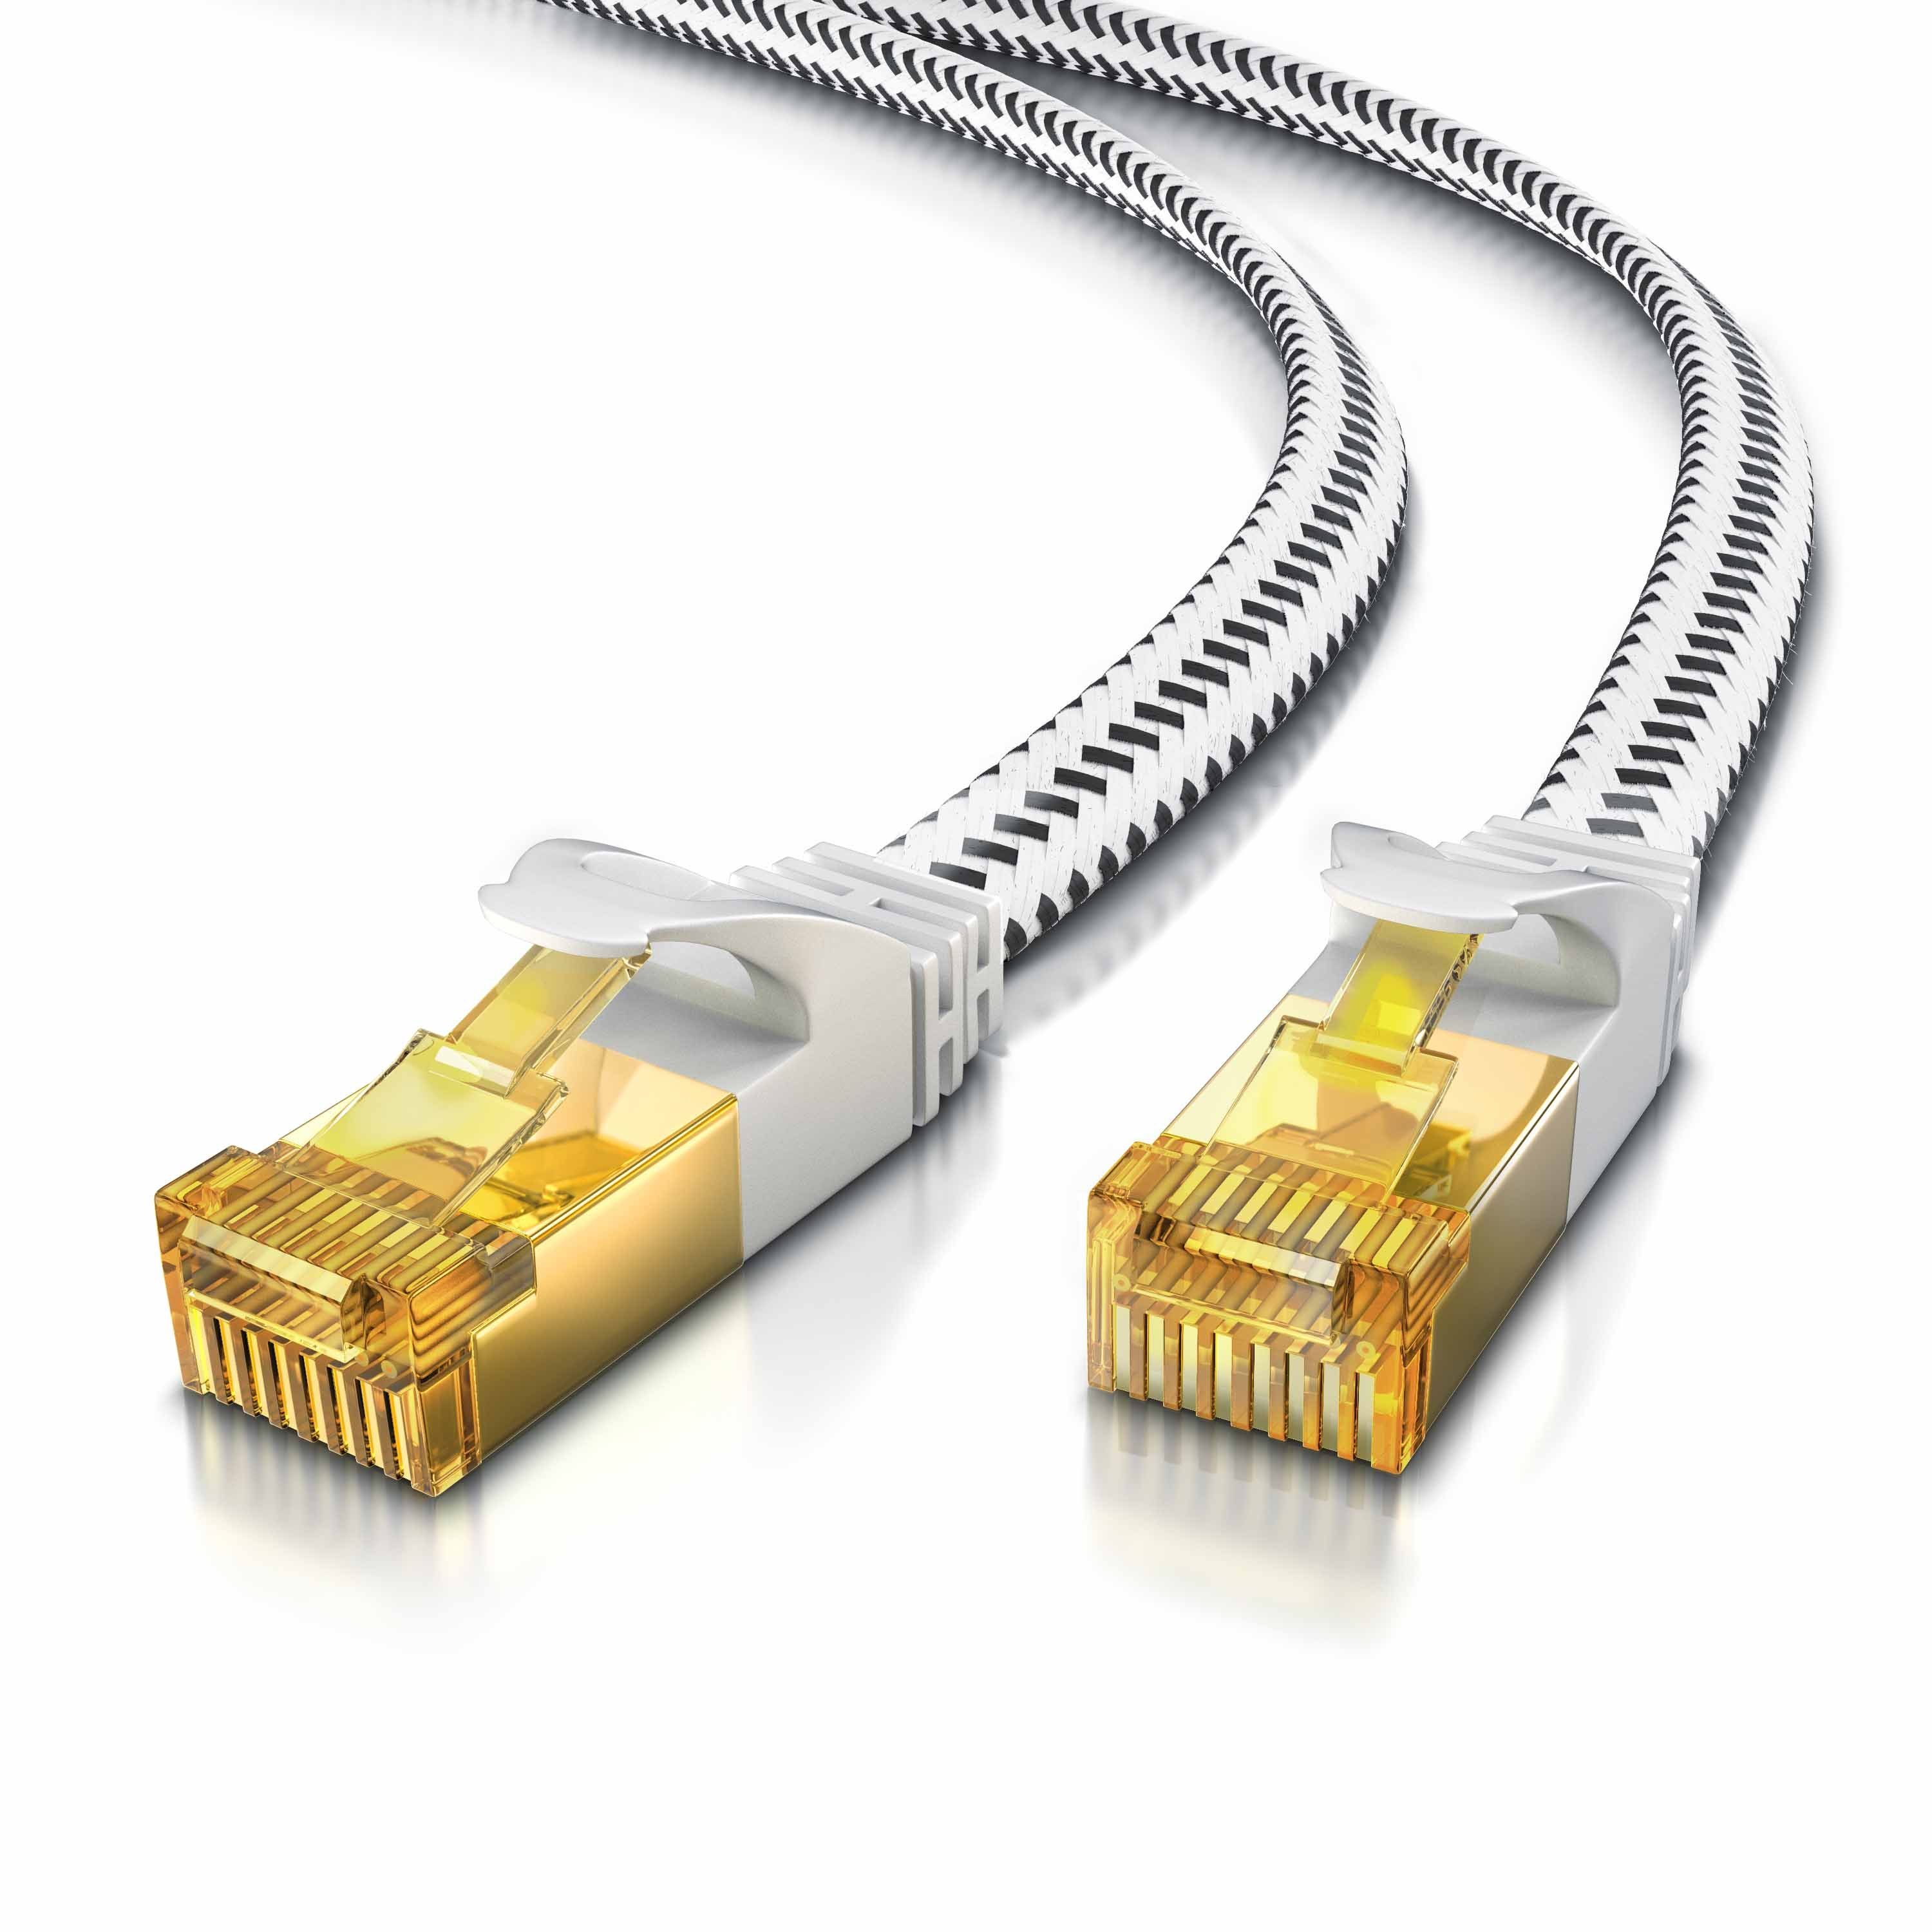 Primewire LAN-Kabel, CAT.7, RJ-45 (Ethernet) (750 cm), Patchkabel flach CAT 7, Baumwollmantel, Flachband Netzwerkkabel - 7,5m